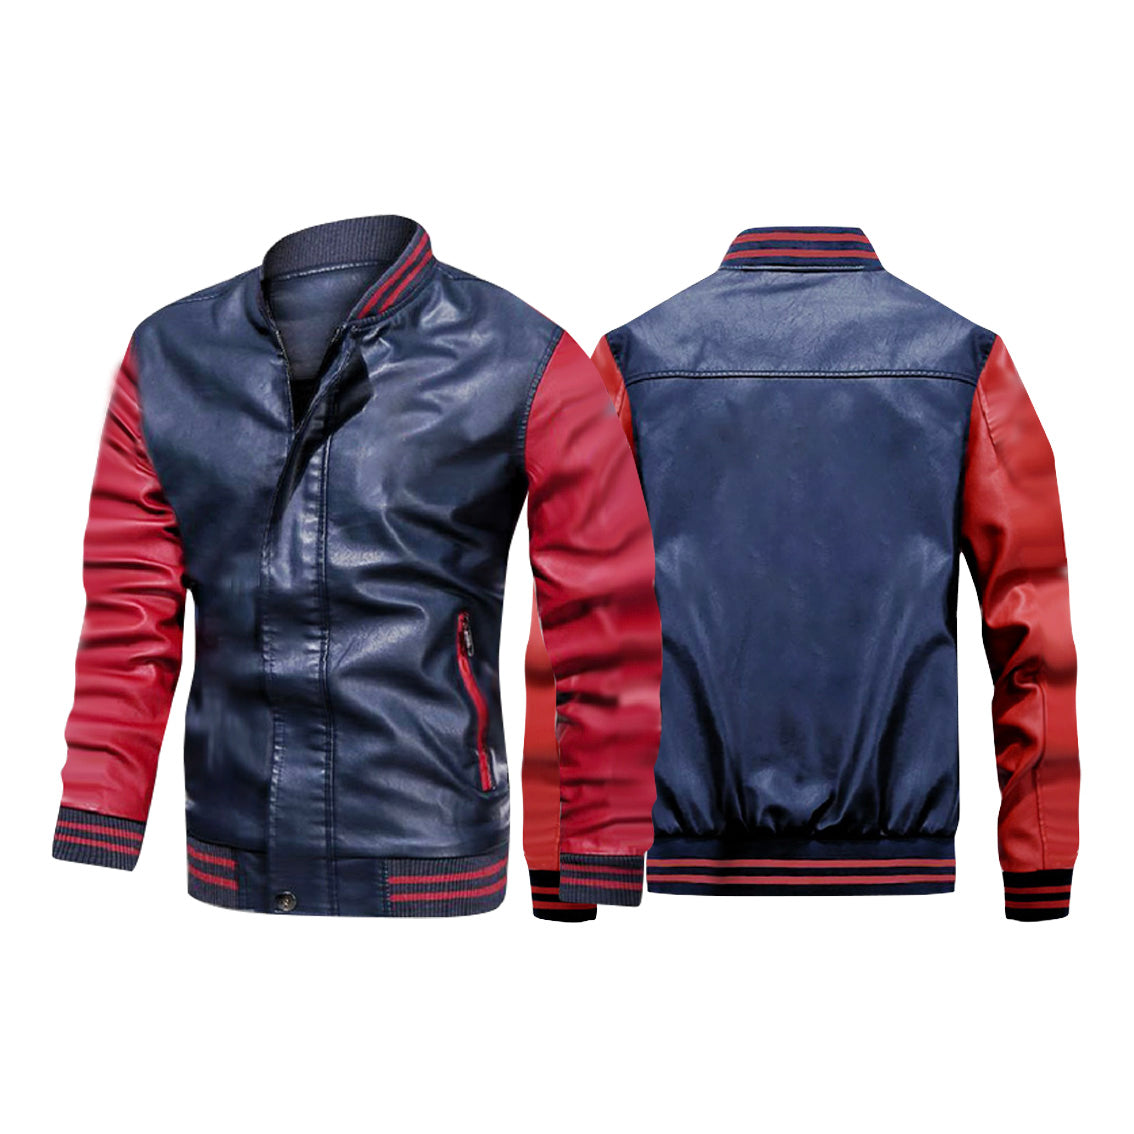 NO Design Super Quality Stylish Leather Bomber Jackets